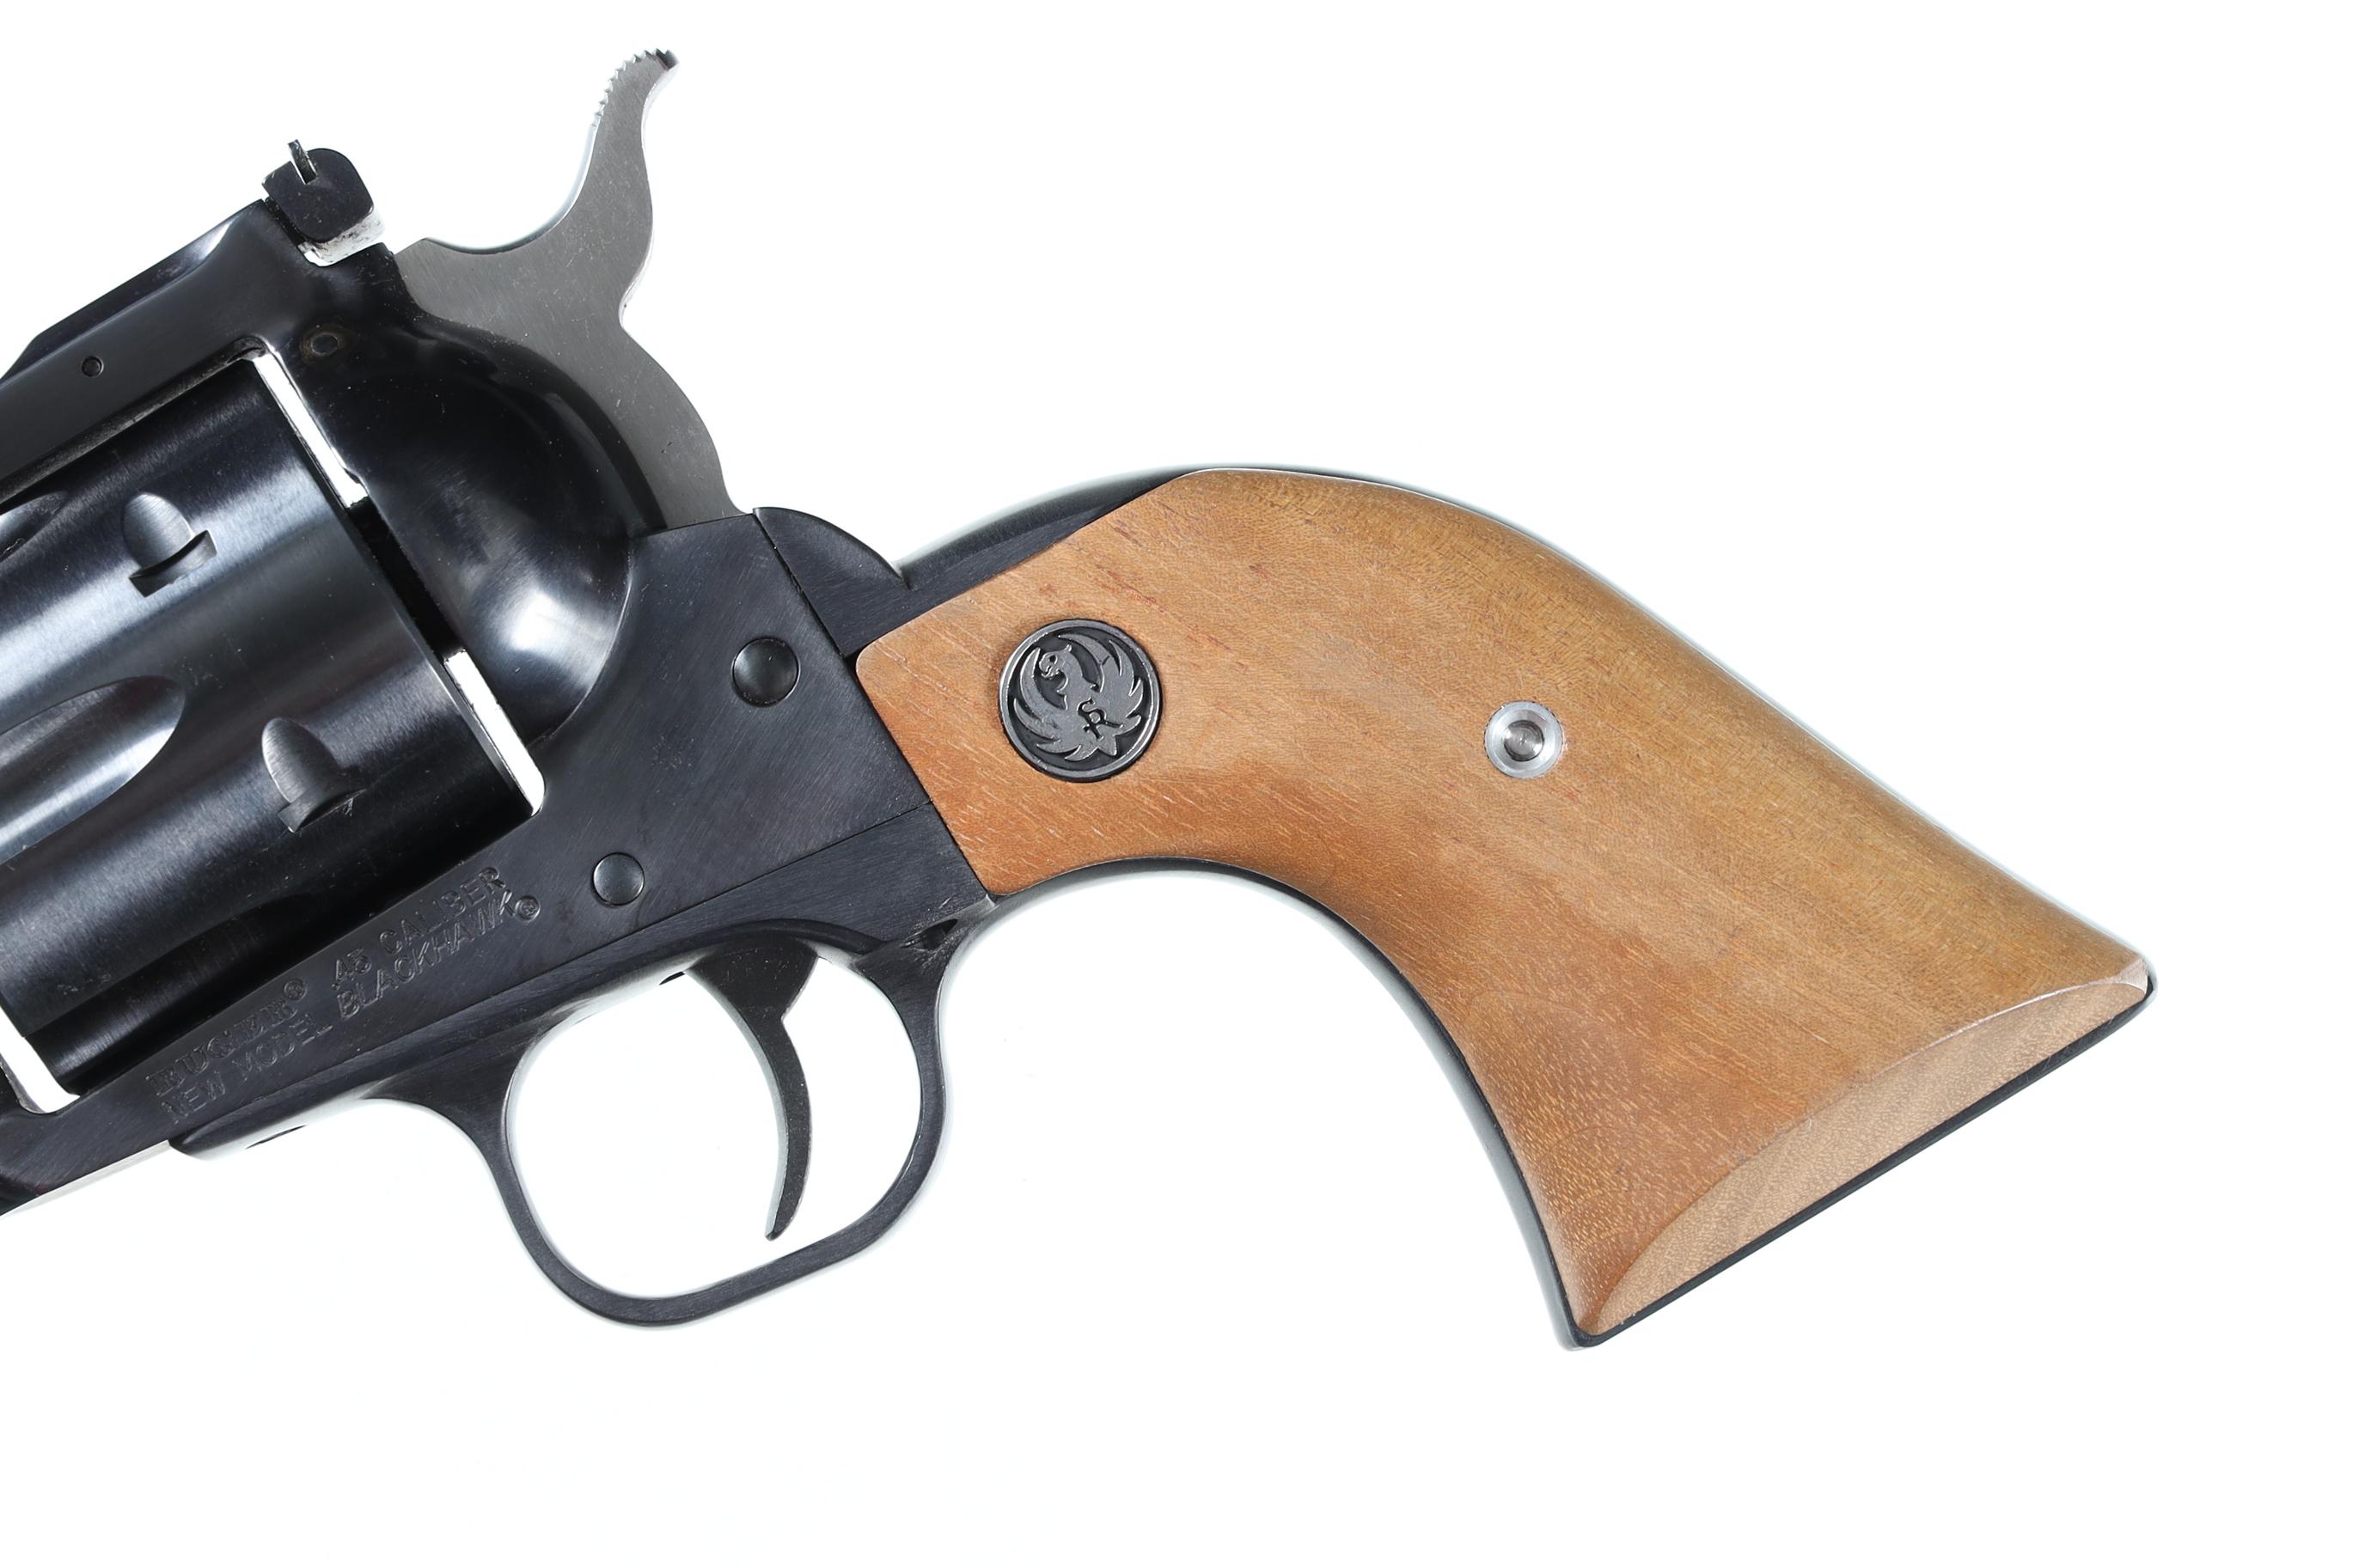 Ruger NM Blackhawk Revolver .45 Colt